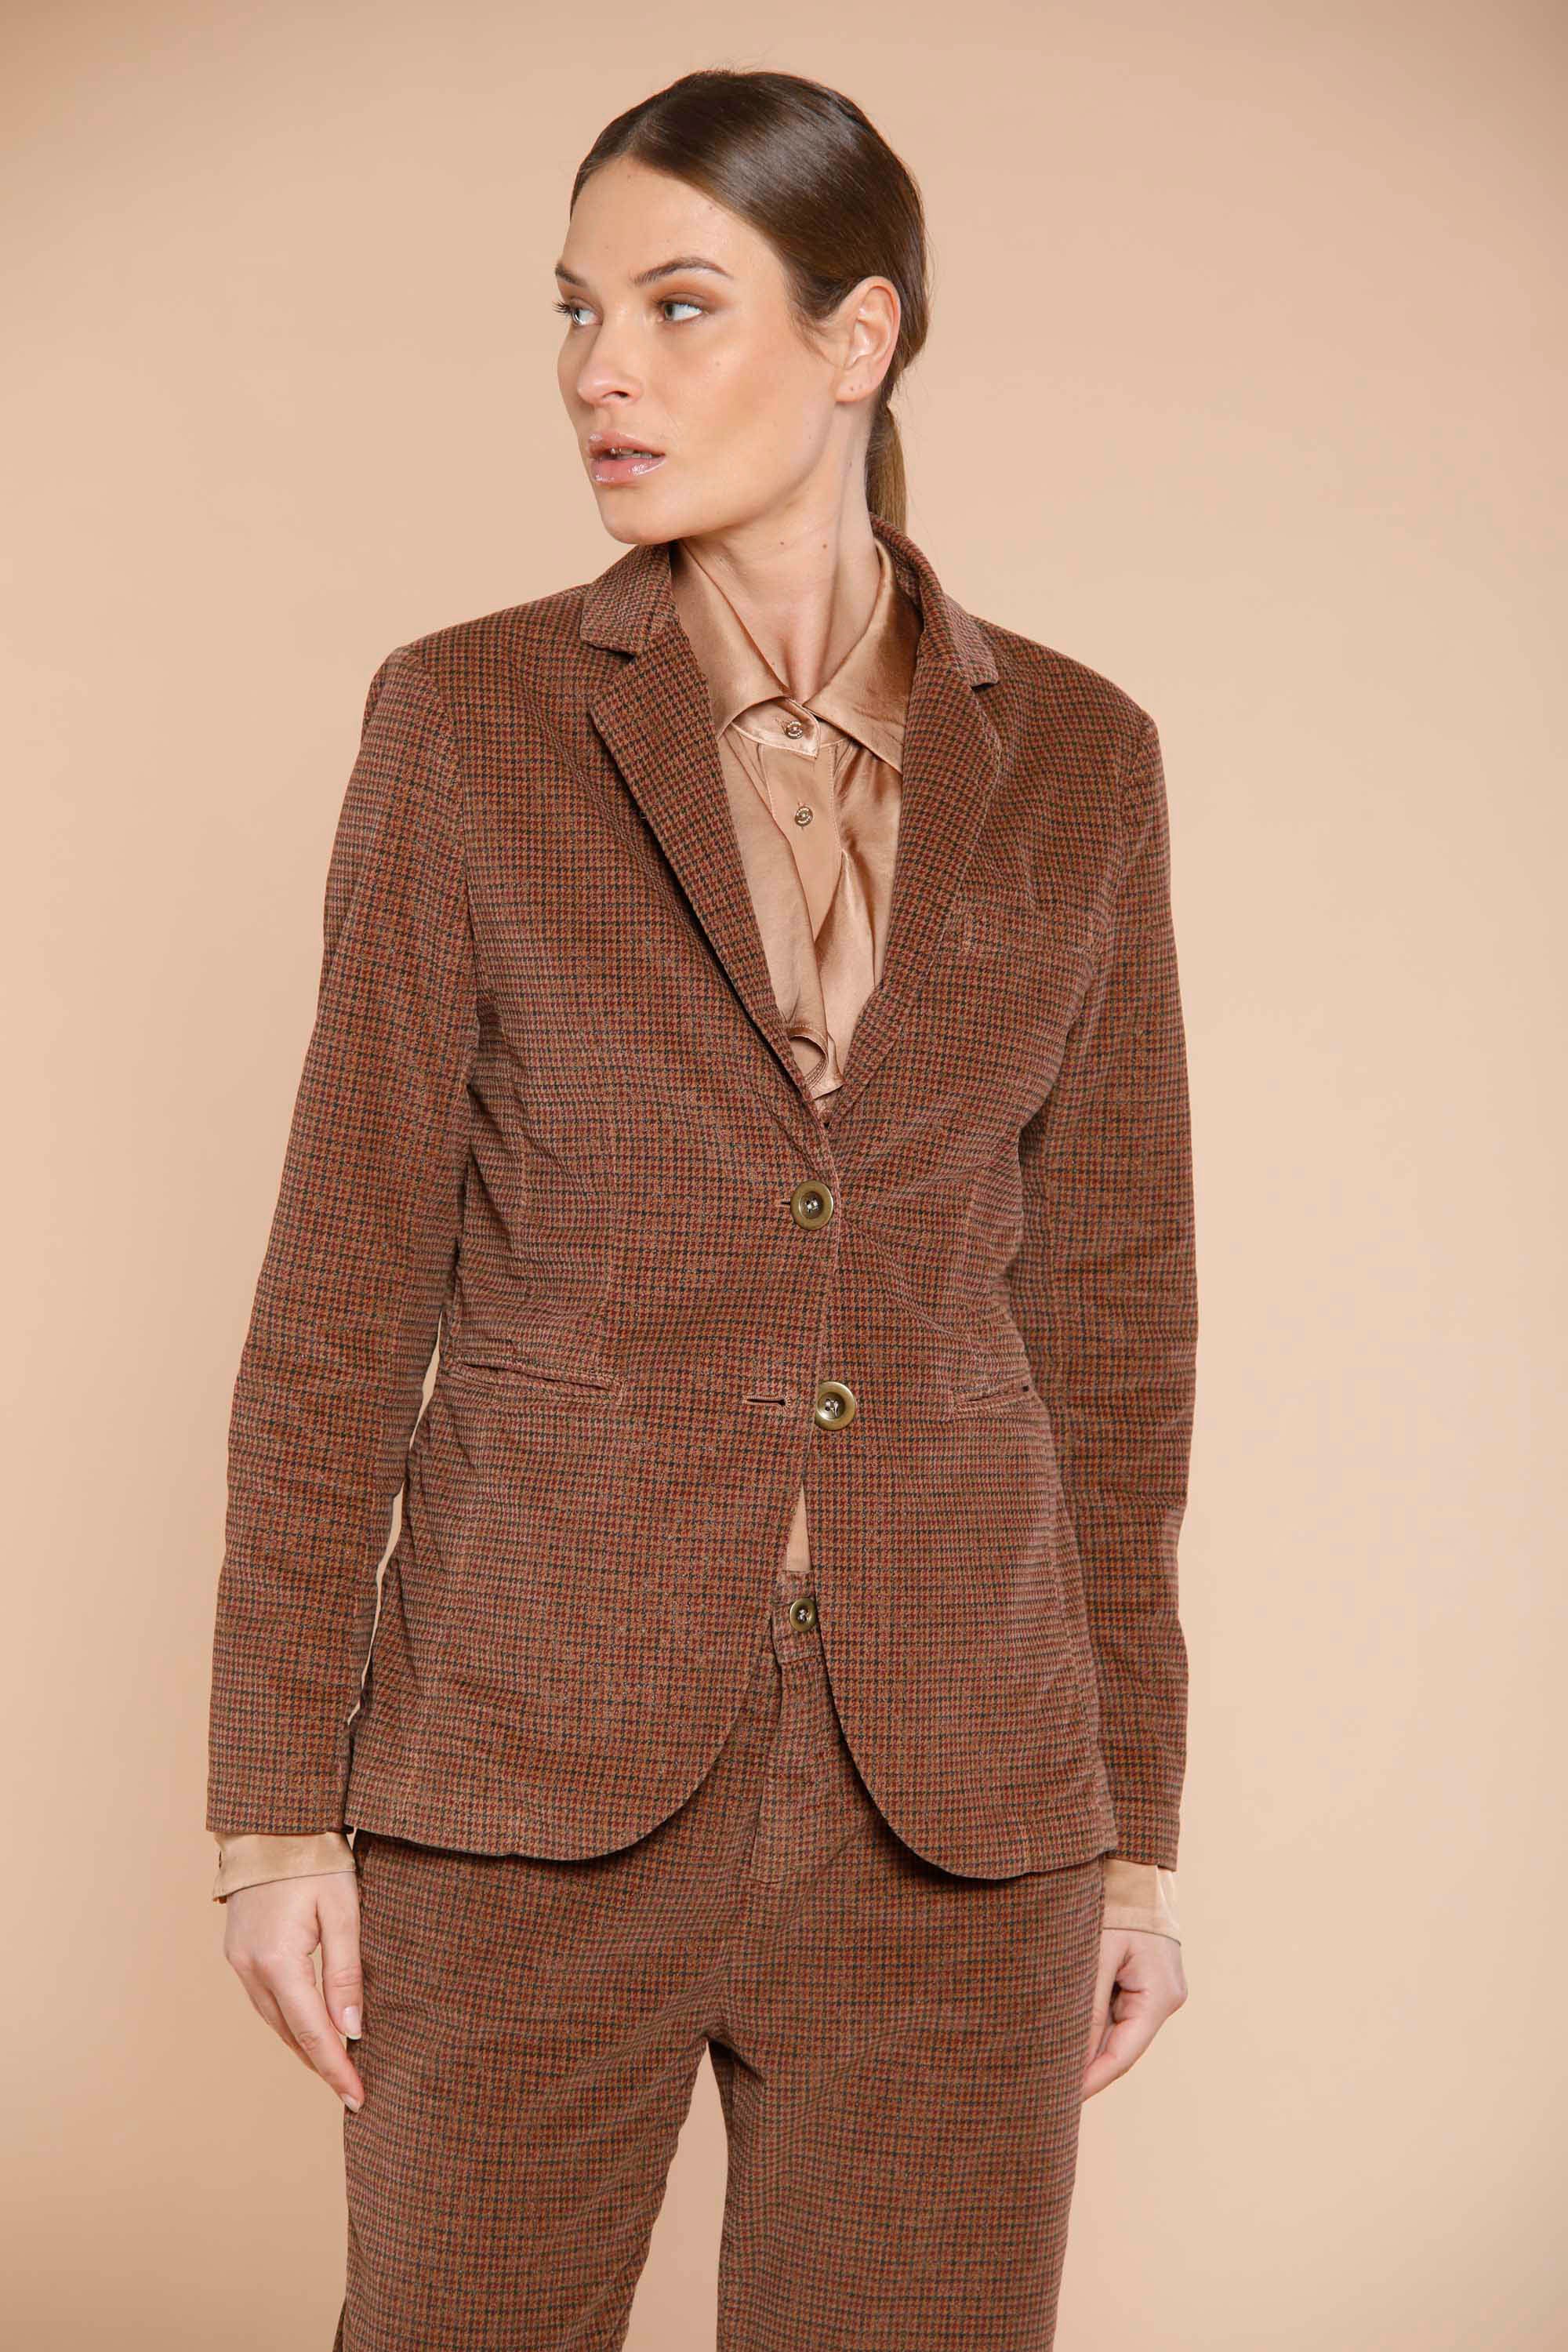 Image 1 du blazer femme en velours noisette à motif caille dorés modèle Helena par Mason's